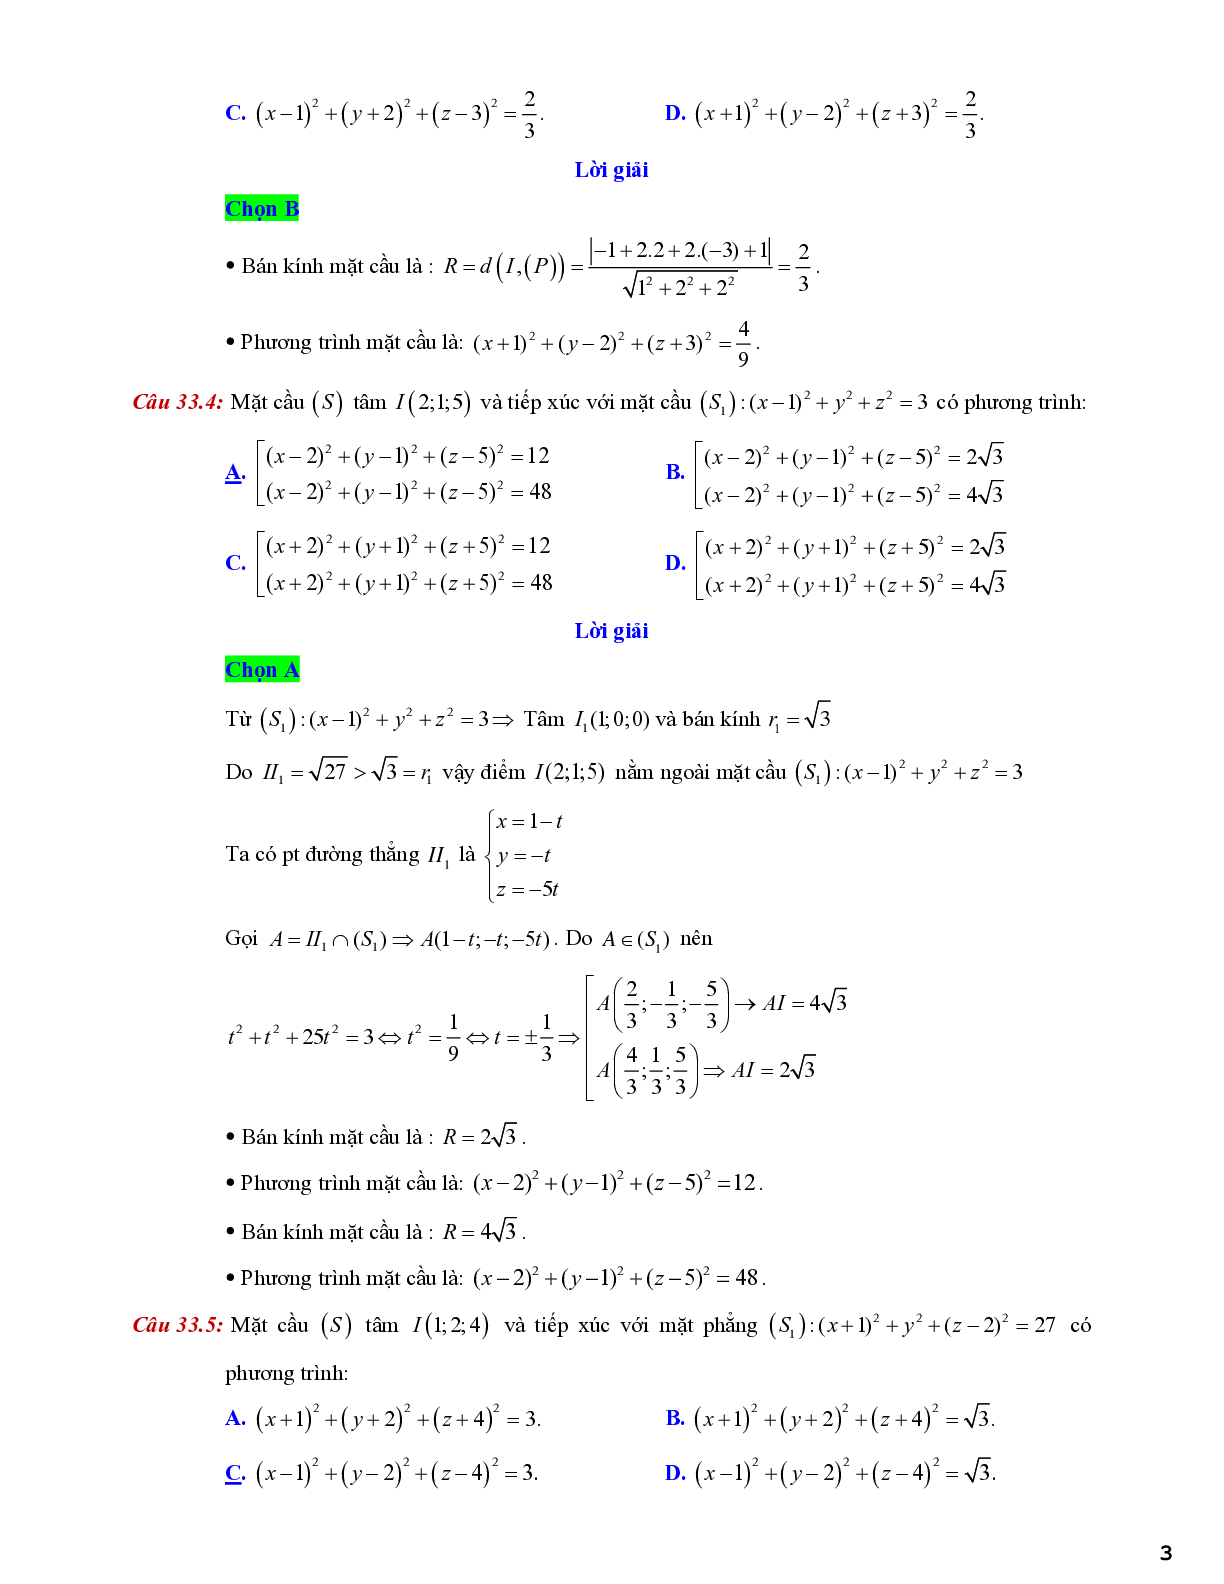 Lý thuyết và bài tập về viết phương trình mặt cầu - có đáp án chi tiết (trang 3)